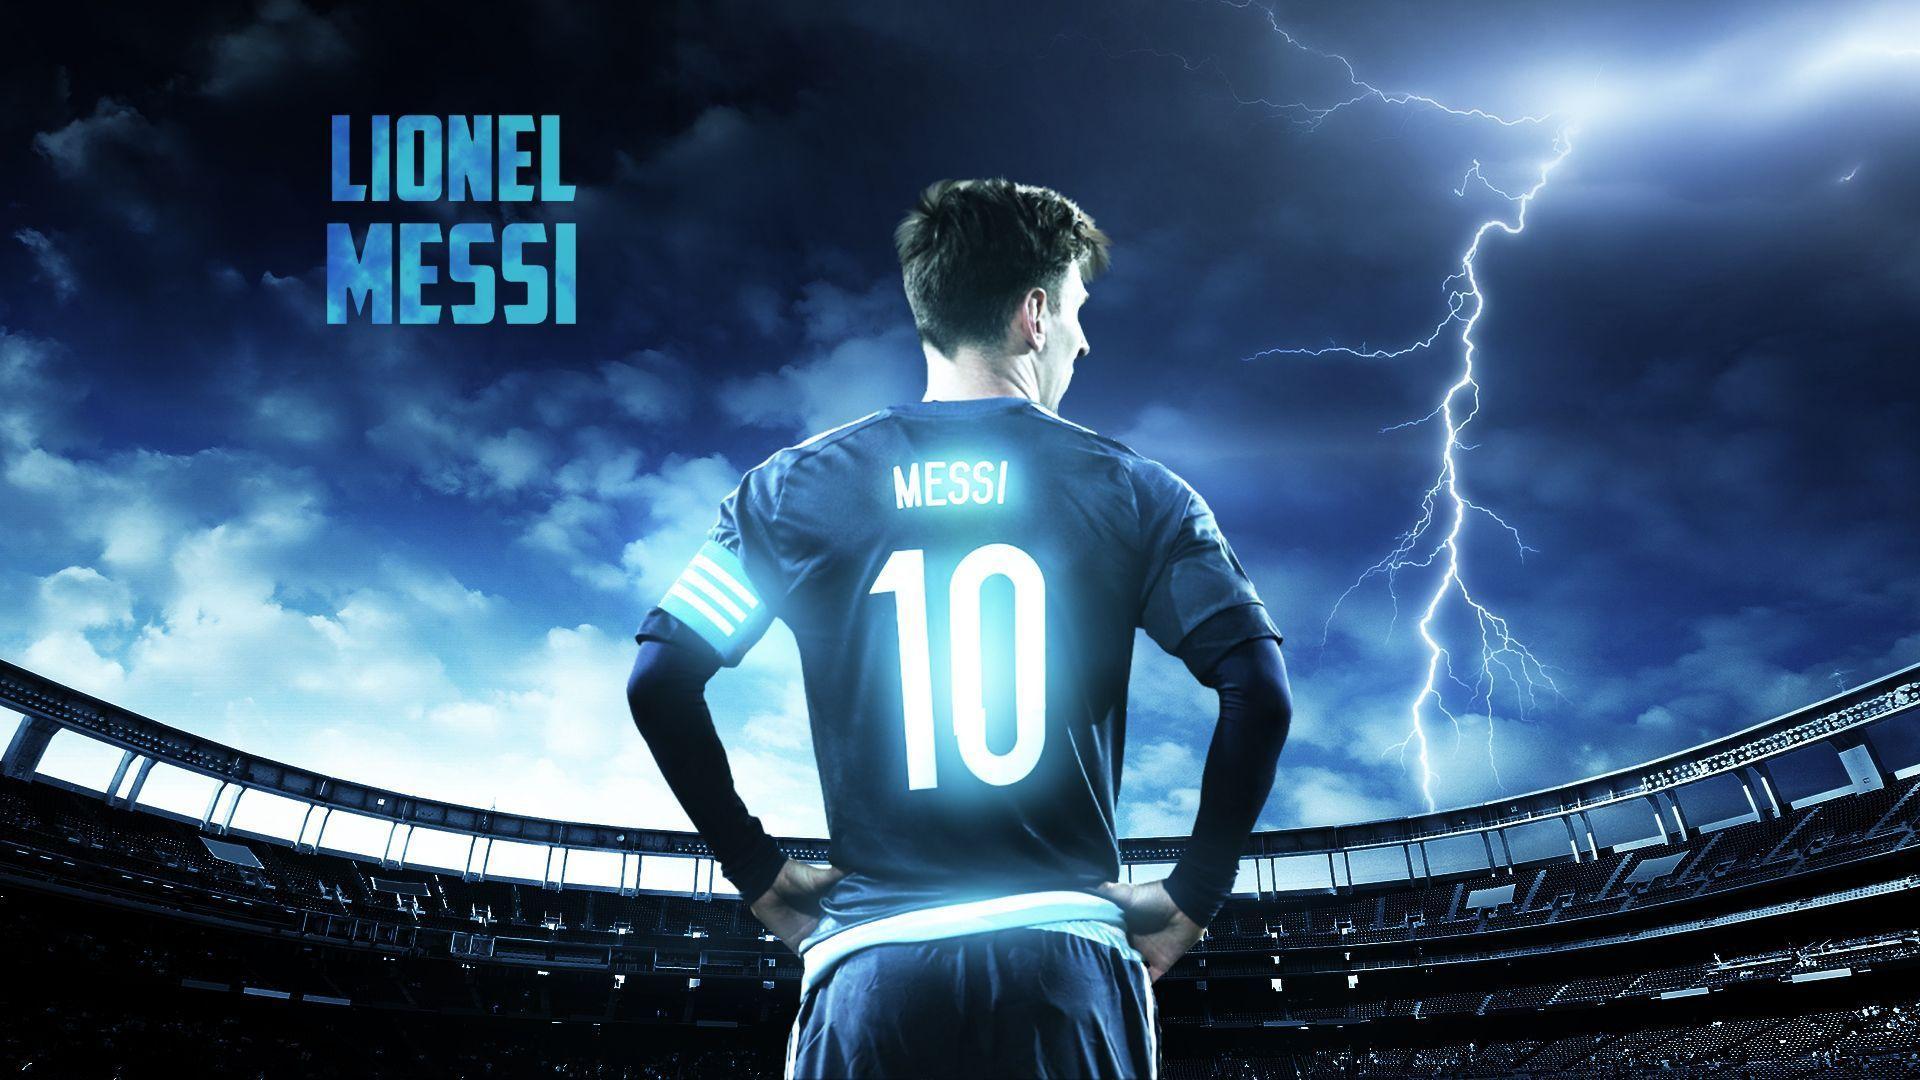 Messi Desktop Background. Wallpaper, Background, Image, Art